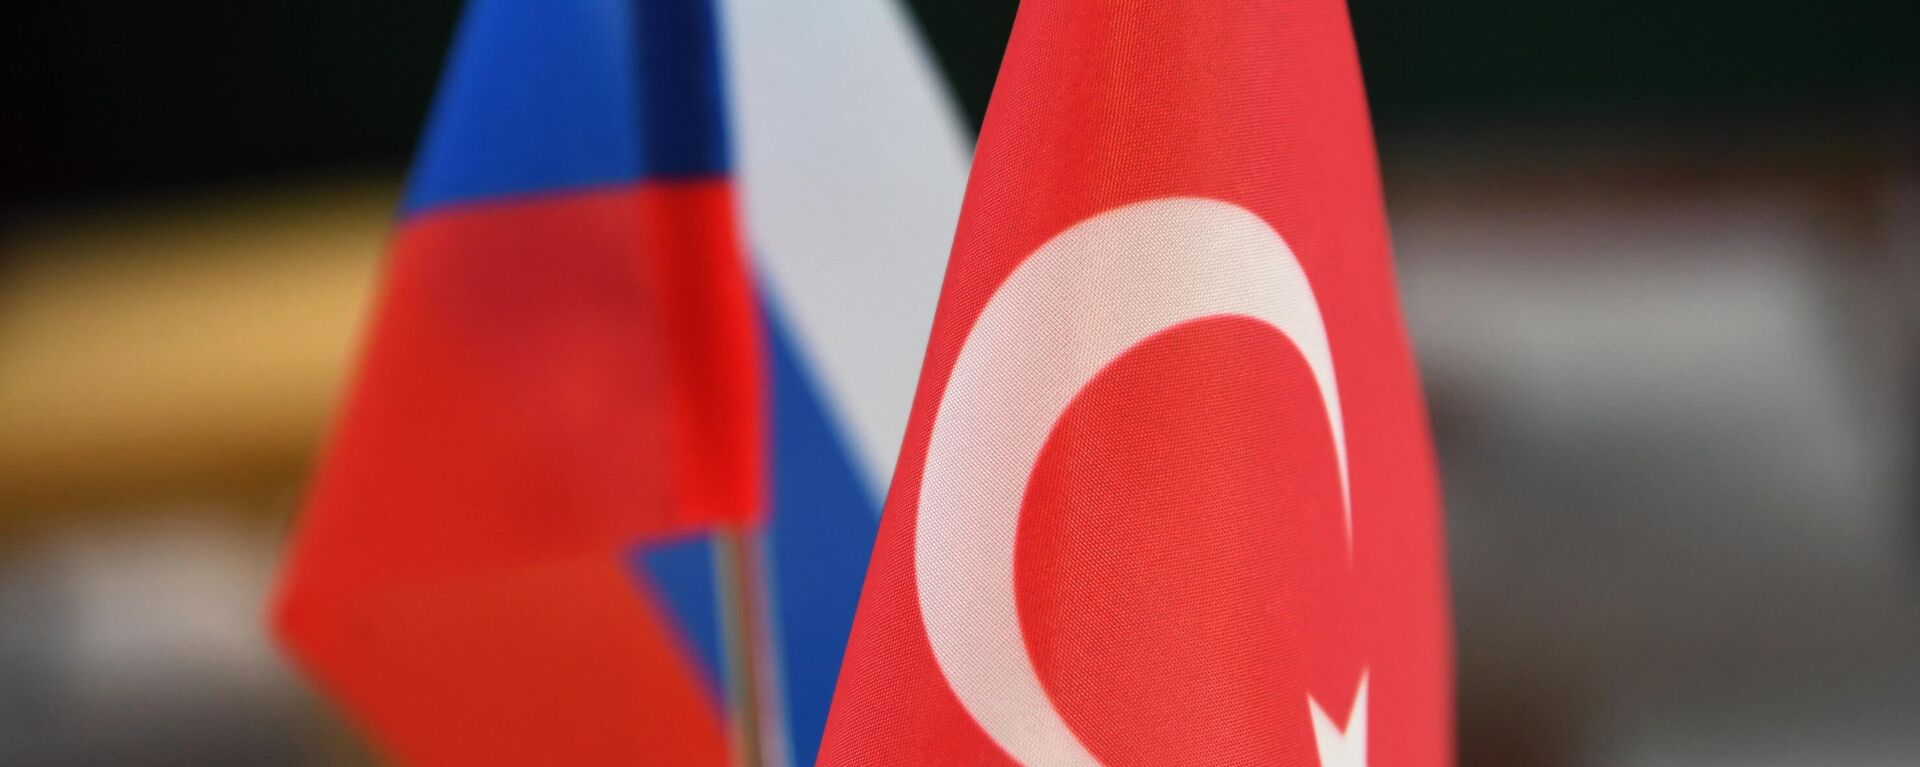 Banderas de Rusia y Turquía - Sputnik Mundo, 1920, 29.06.2022